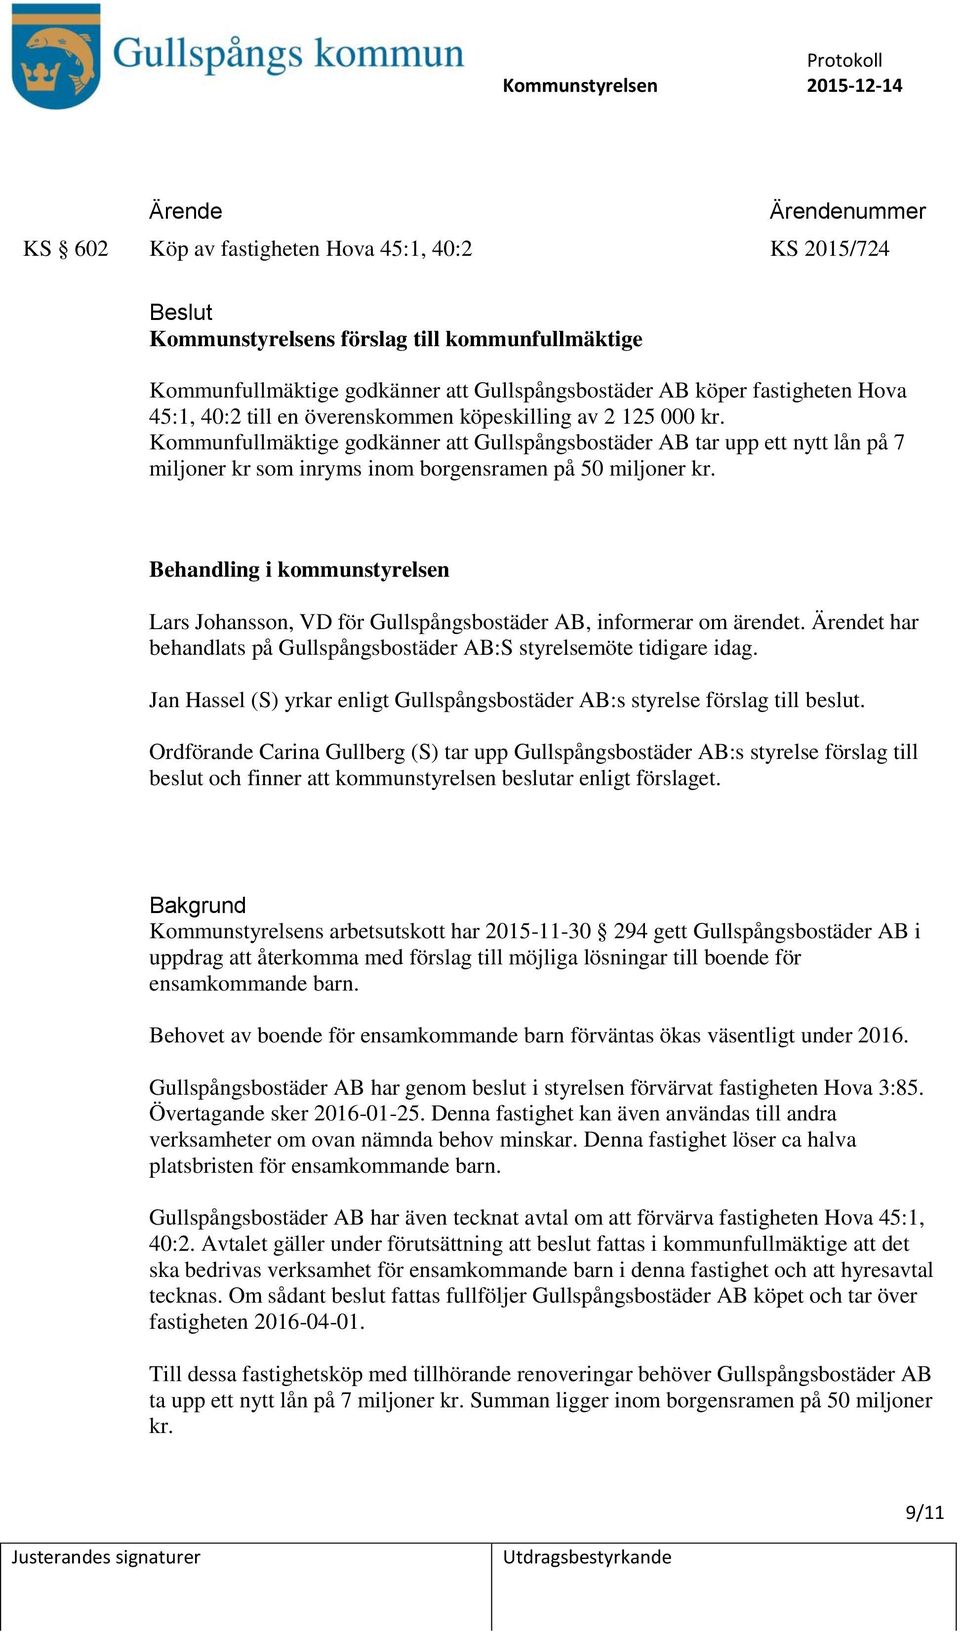 Behandling i kommunstyrelsen Lars Johansson, VD för Gullspångsbostäder AB, informerar om ärendet. t har behandlats på Gullspångsbostäder AB:S styrelsemöte tidigare idag.